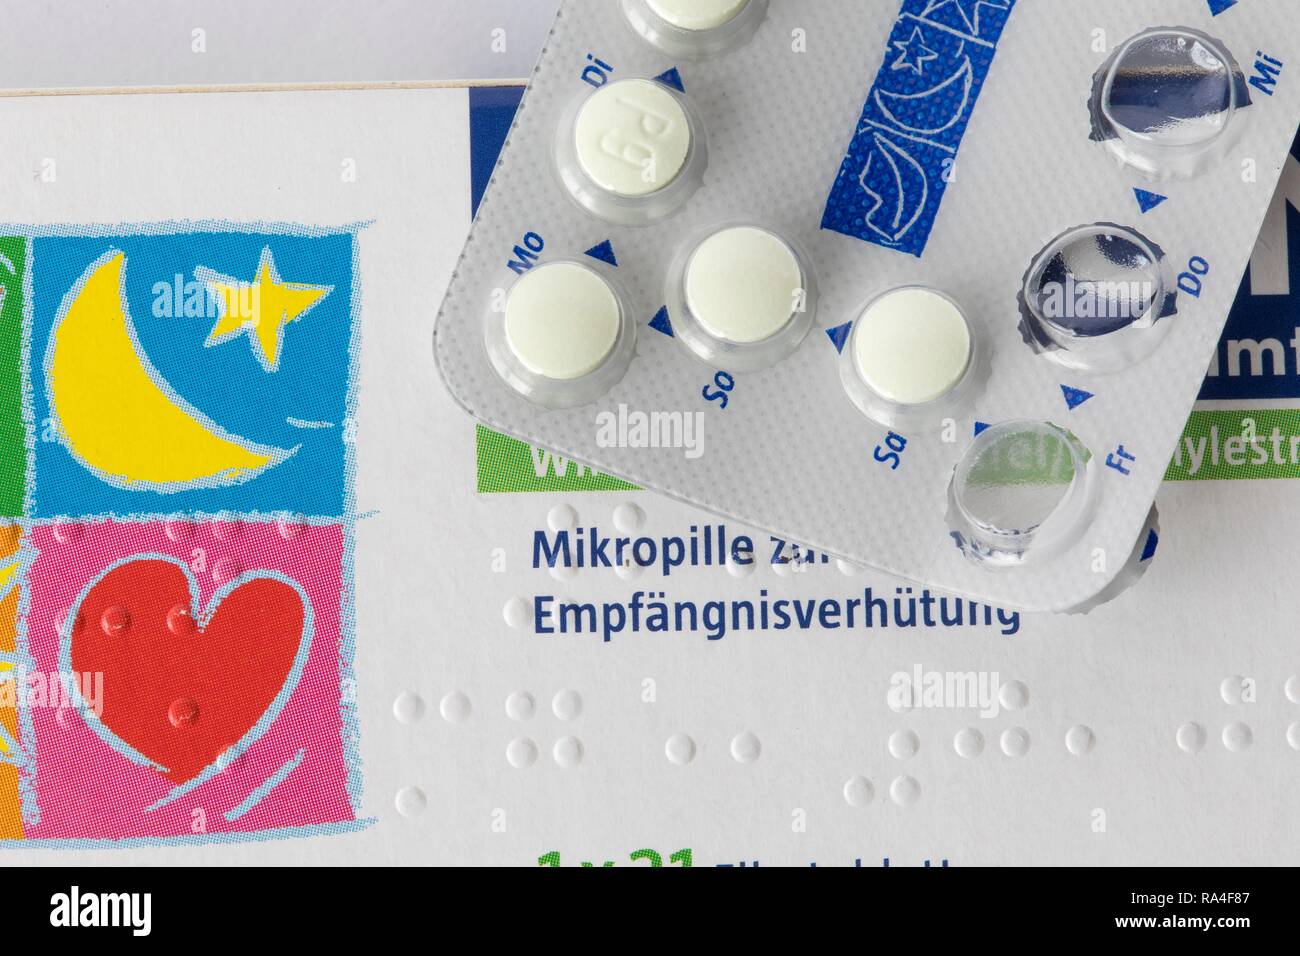 Pilule contraceptive, médicaments, packs tablette, Allemagne Banque D'Images